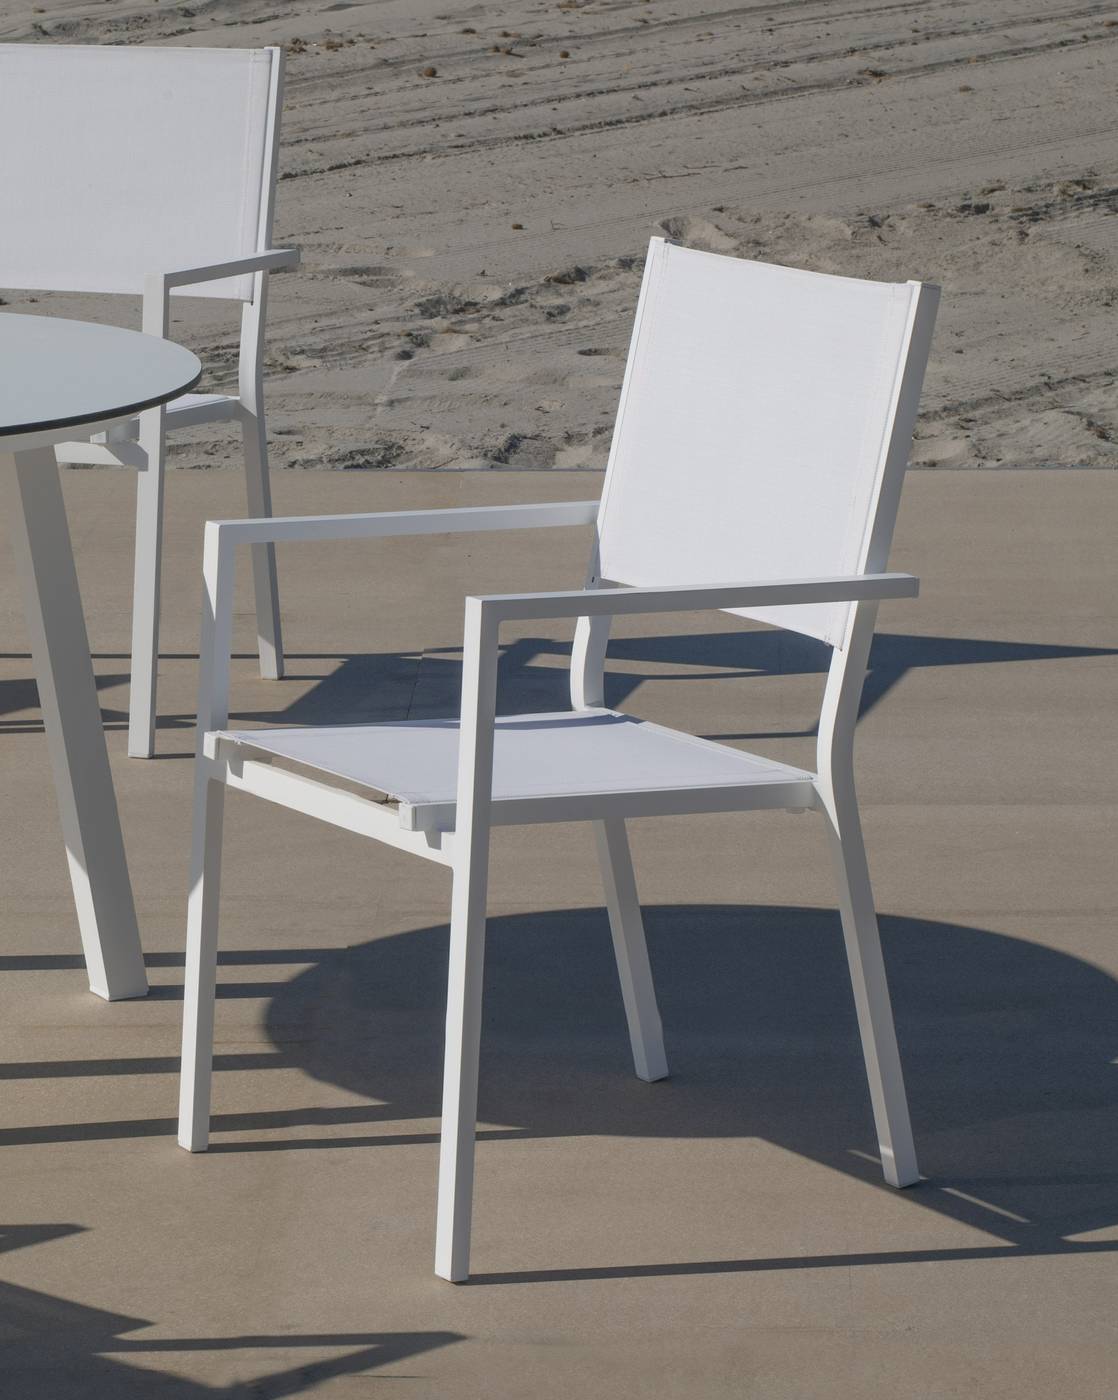 Set Aluminio Neferti-Córcega 150-4 - Conjunto de aluminio: Mesa de comedor plegable de 150 cm. + 4 sillones de textilen. Disponible en color blanco y antracita.